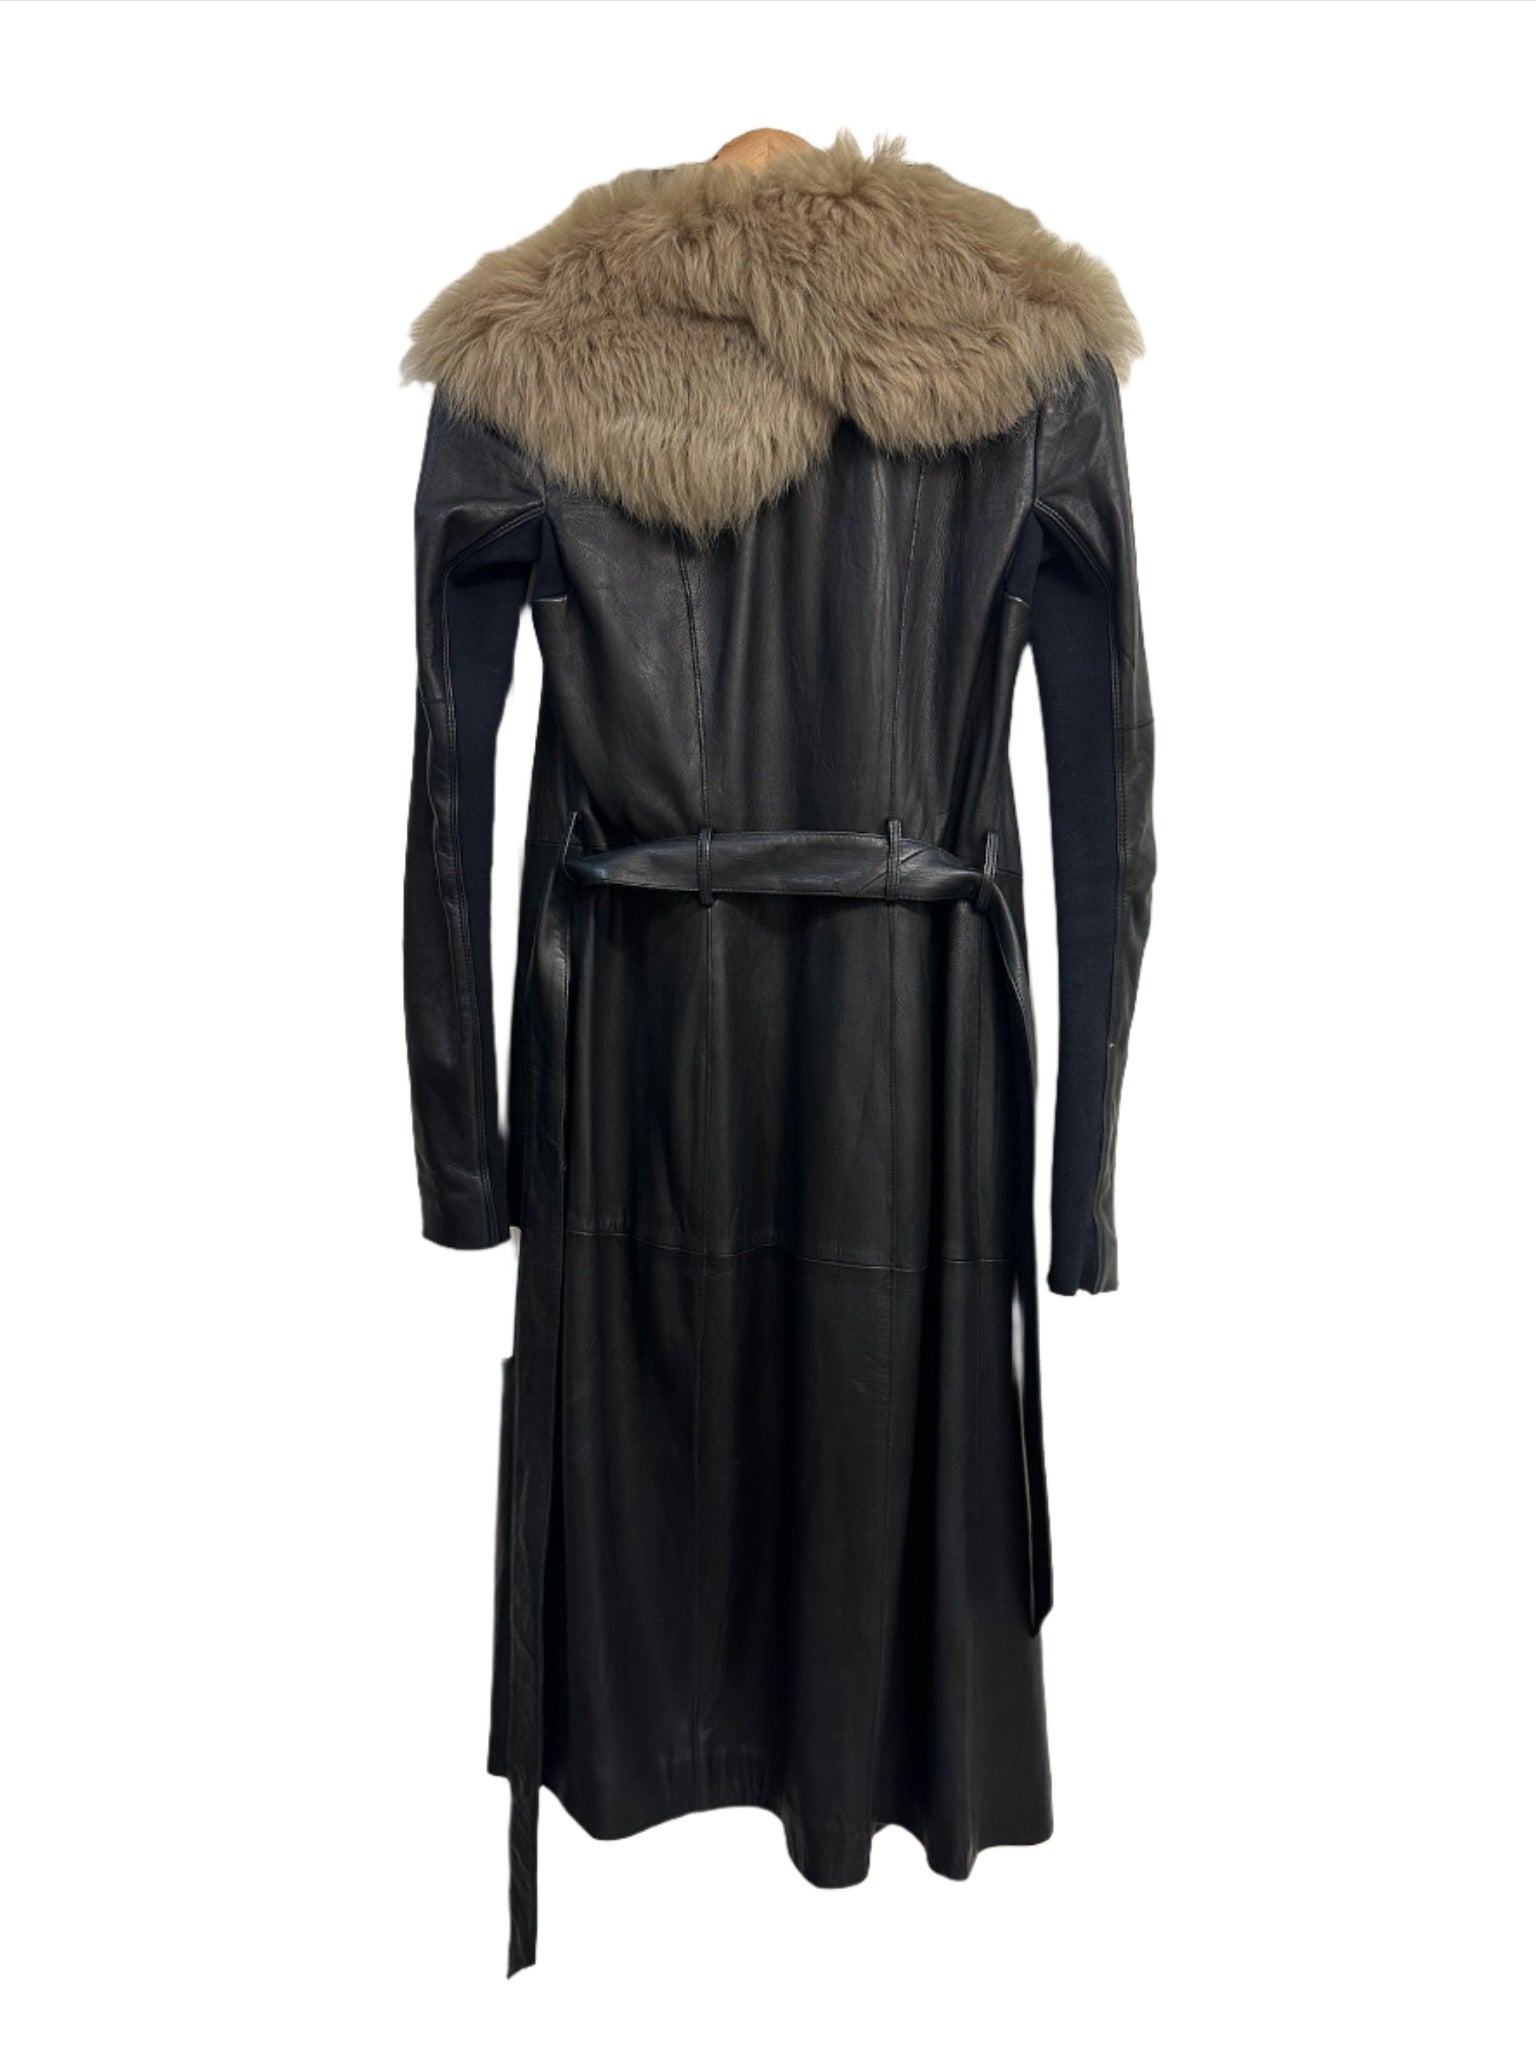 Husk Black Leather Fur Trim Jacket 8